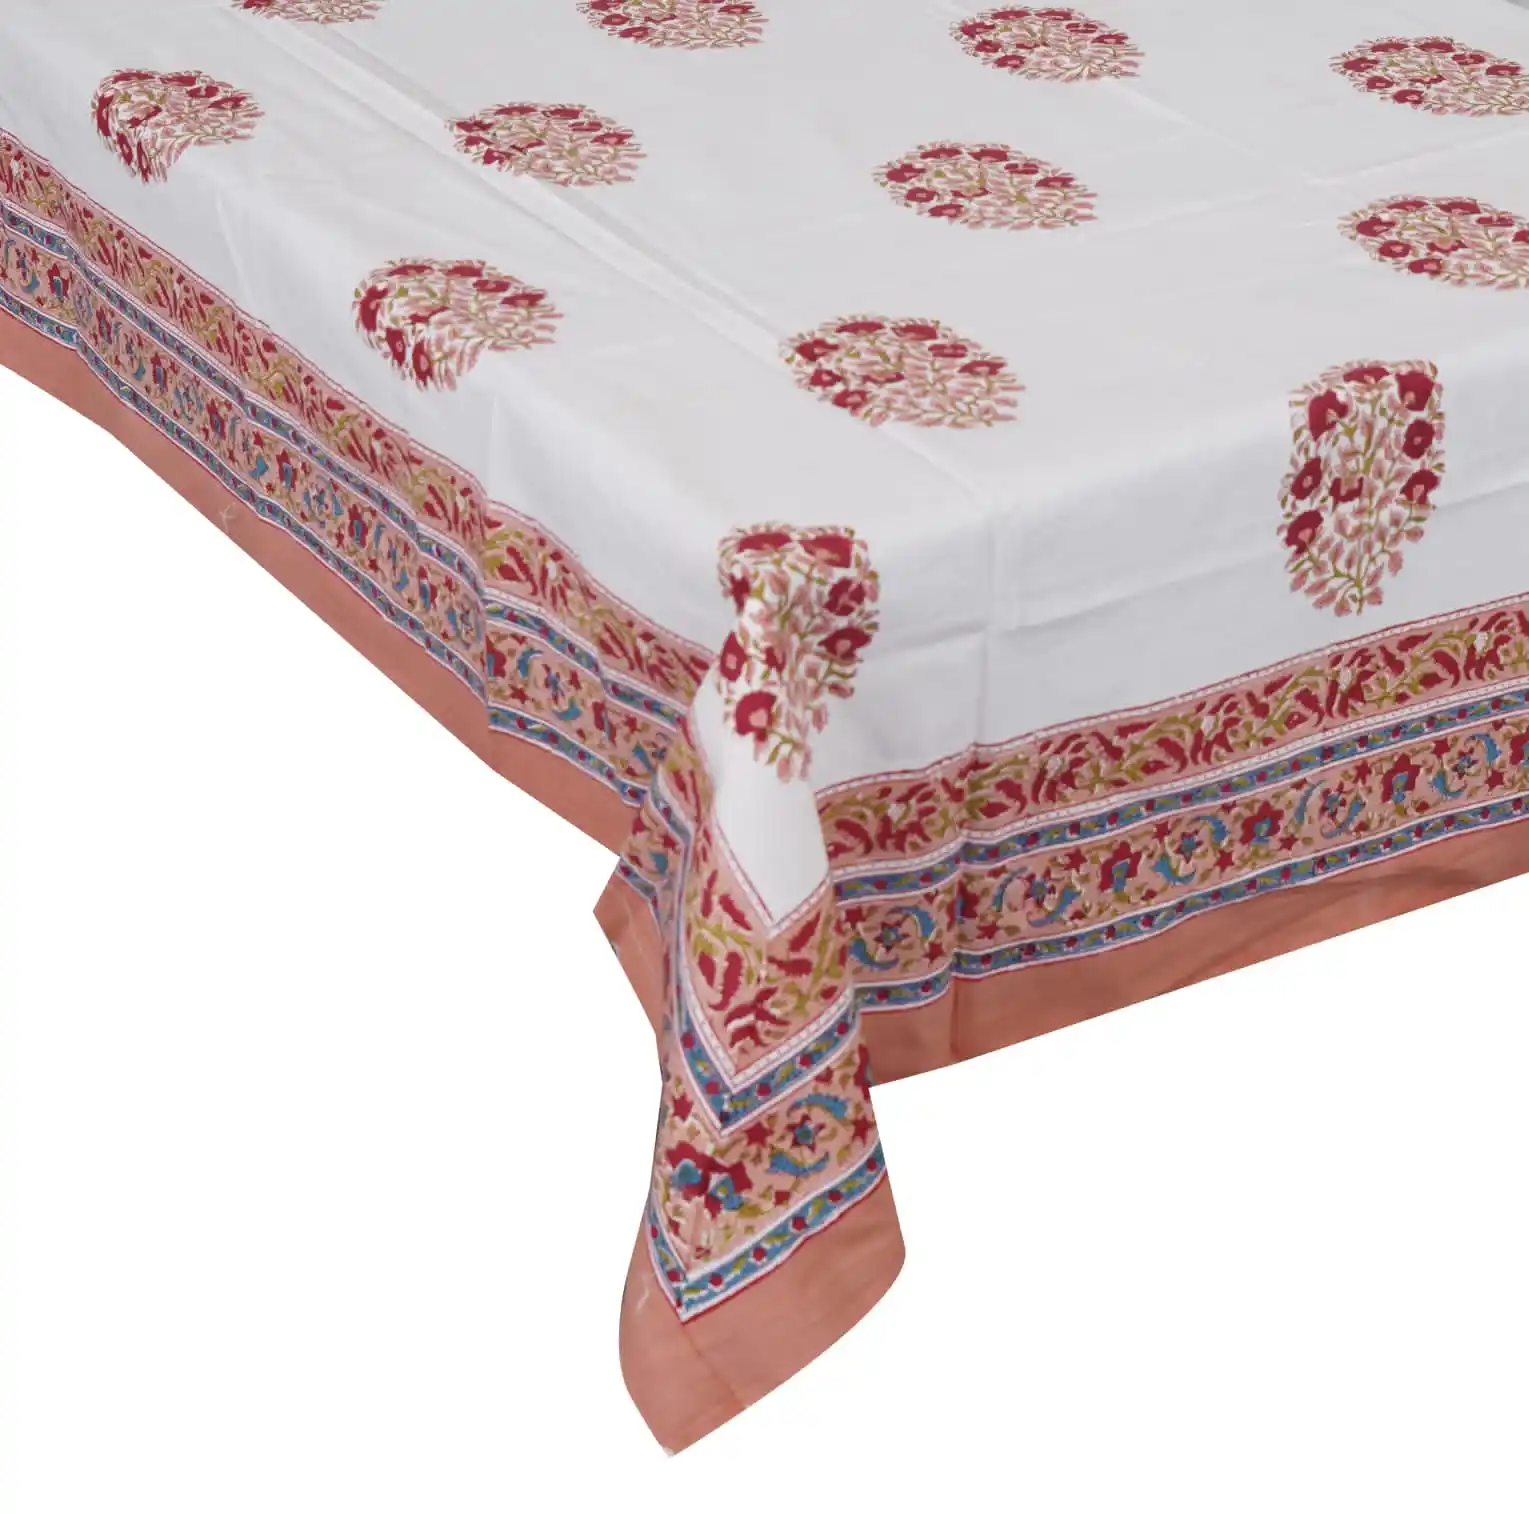 Vente chaude indien table couvre ensemble table vêtements ensemble chaise couverture dentelle tissu nappes et napperon